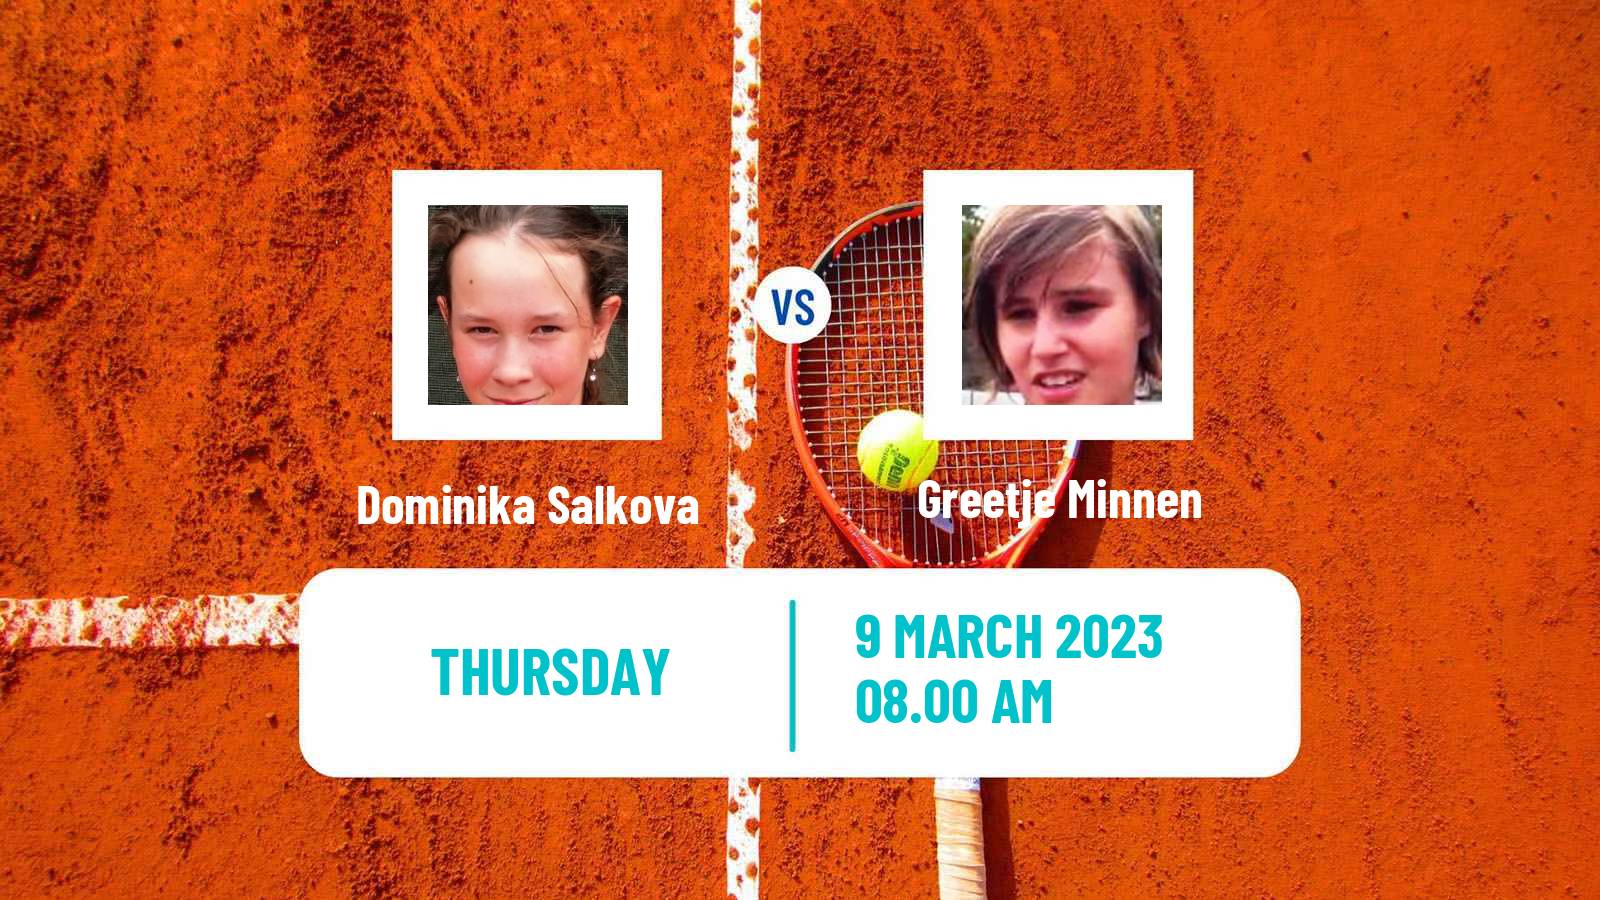 Tennis ITF Tournaments Dominika Salkova - Greetje Minnen